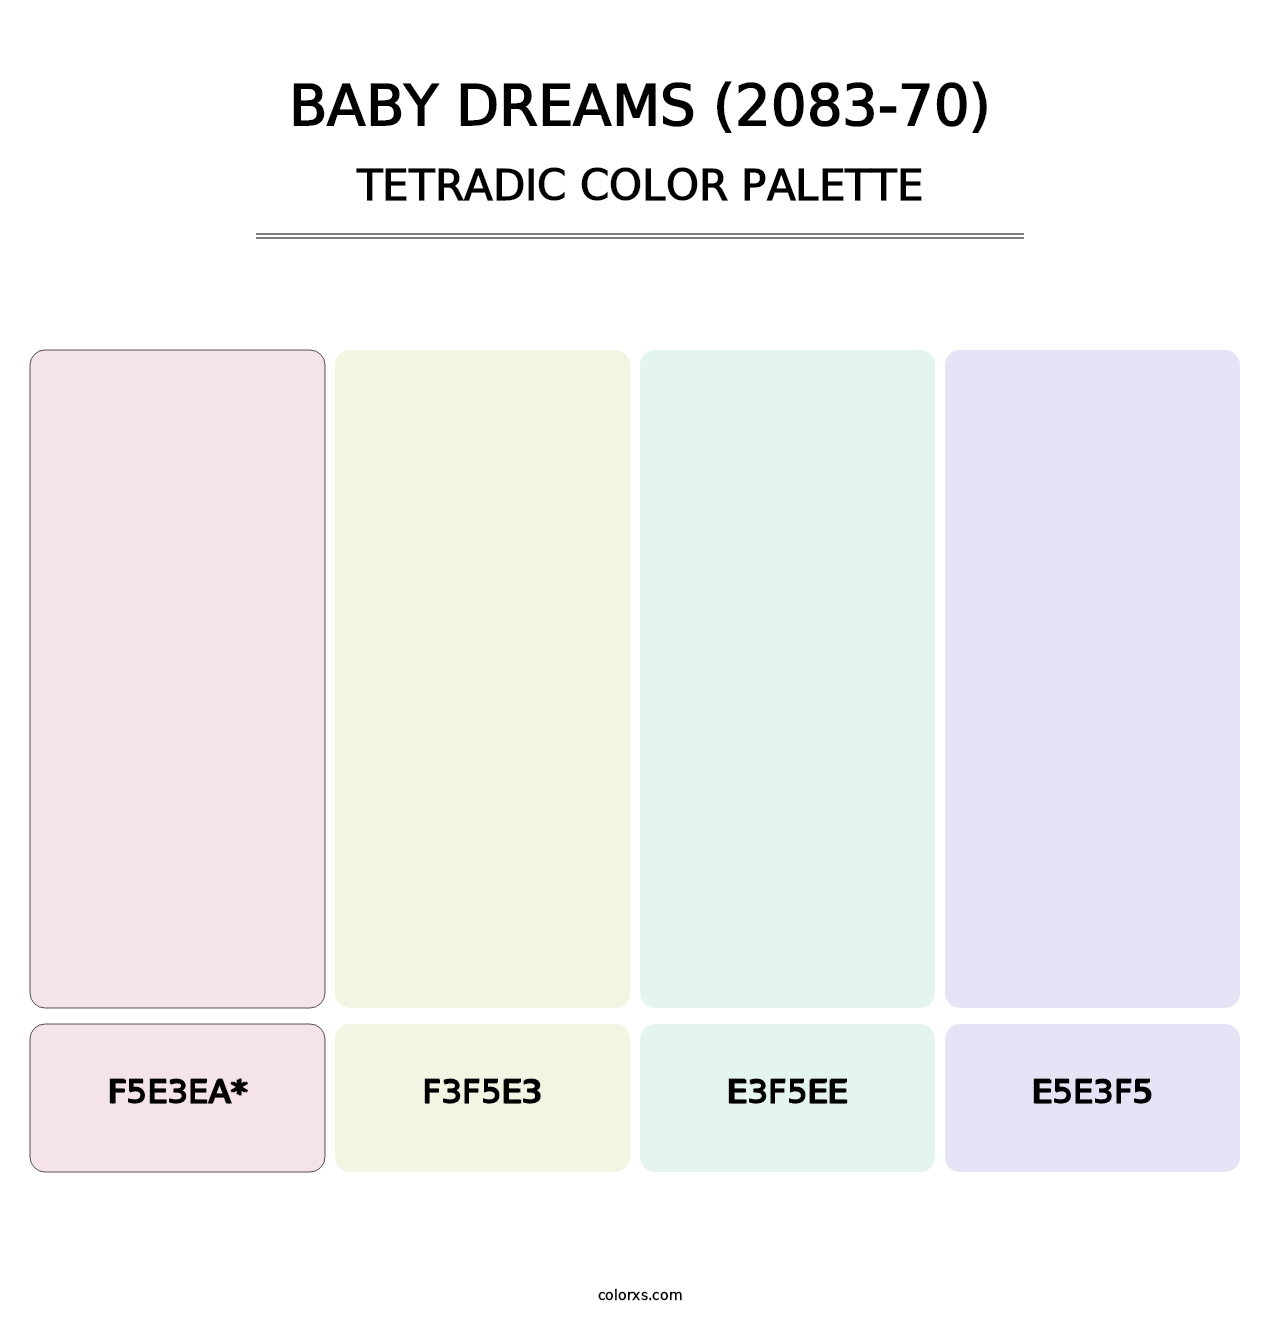 Baby Dreams (2083-70) - Tetradic Color Palette